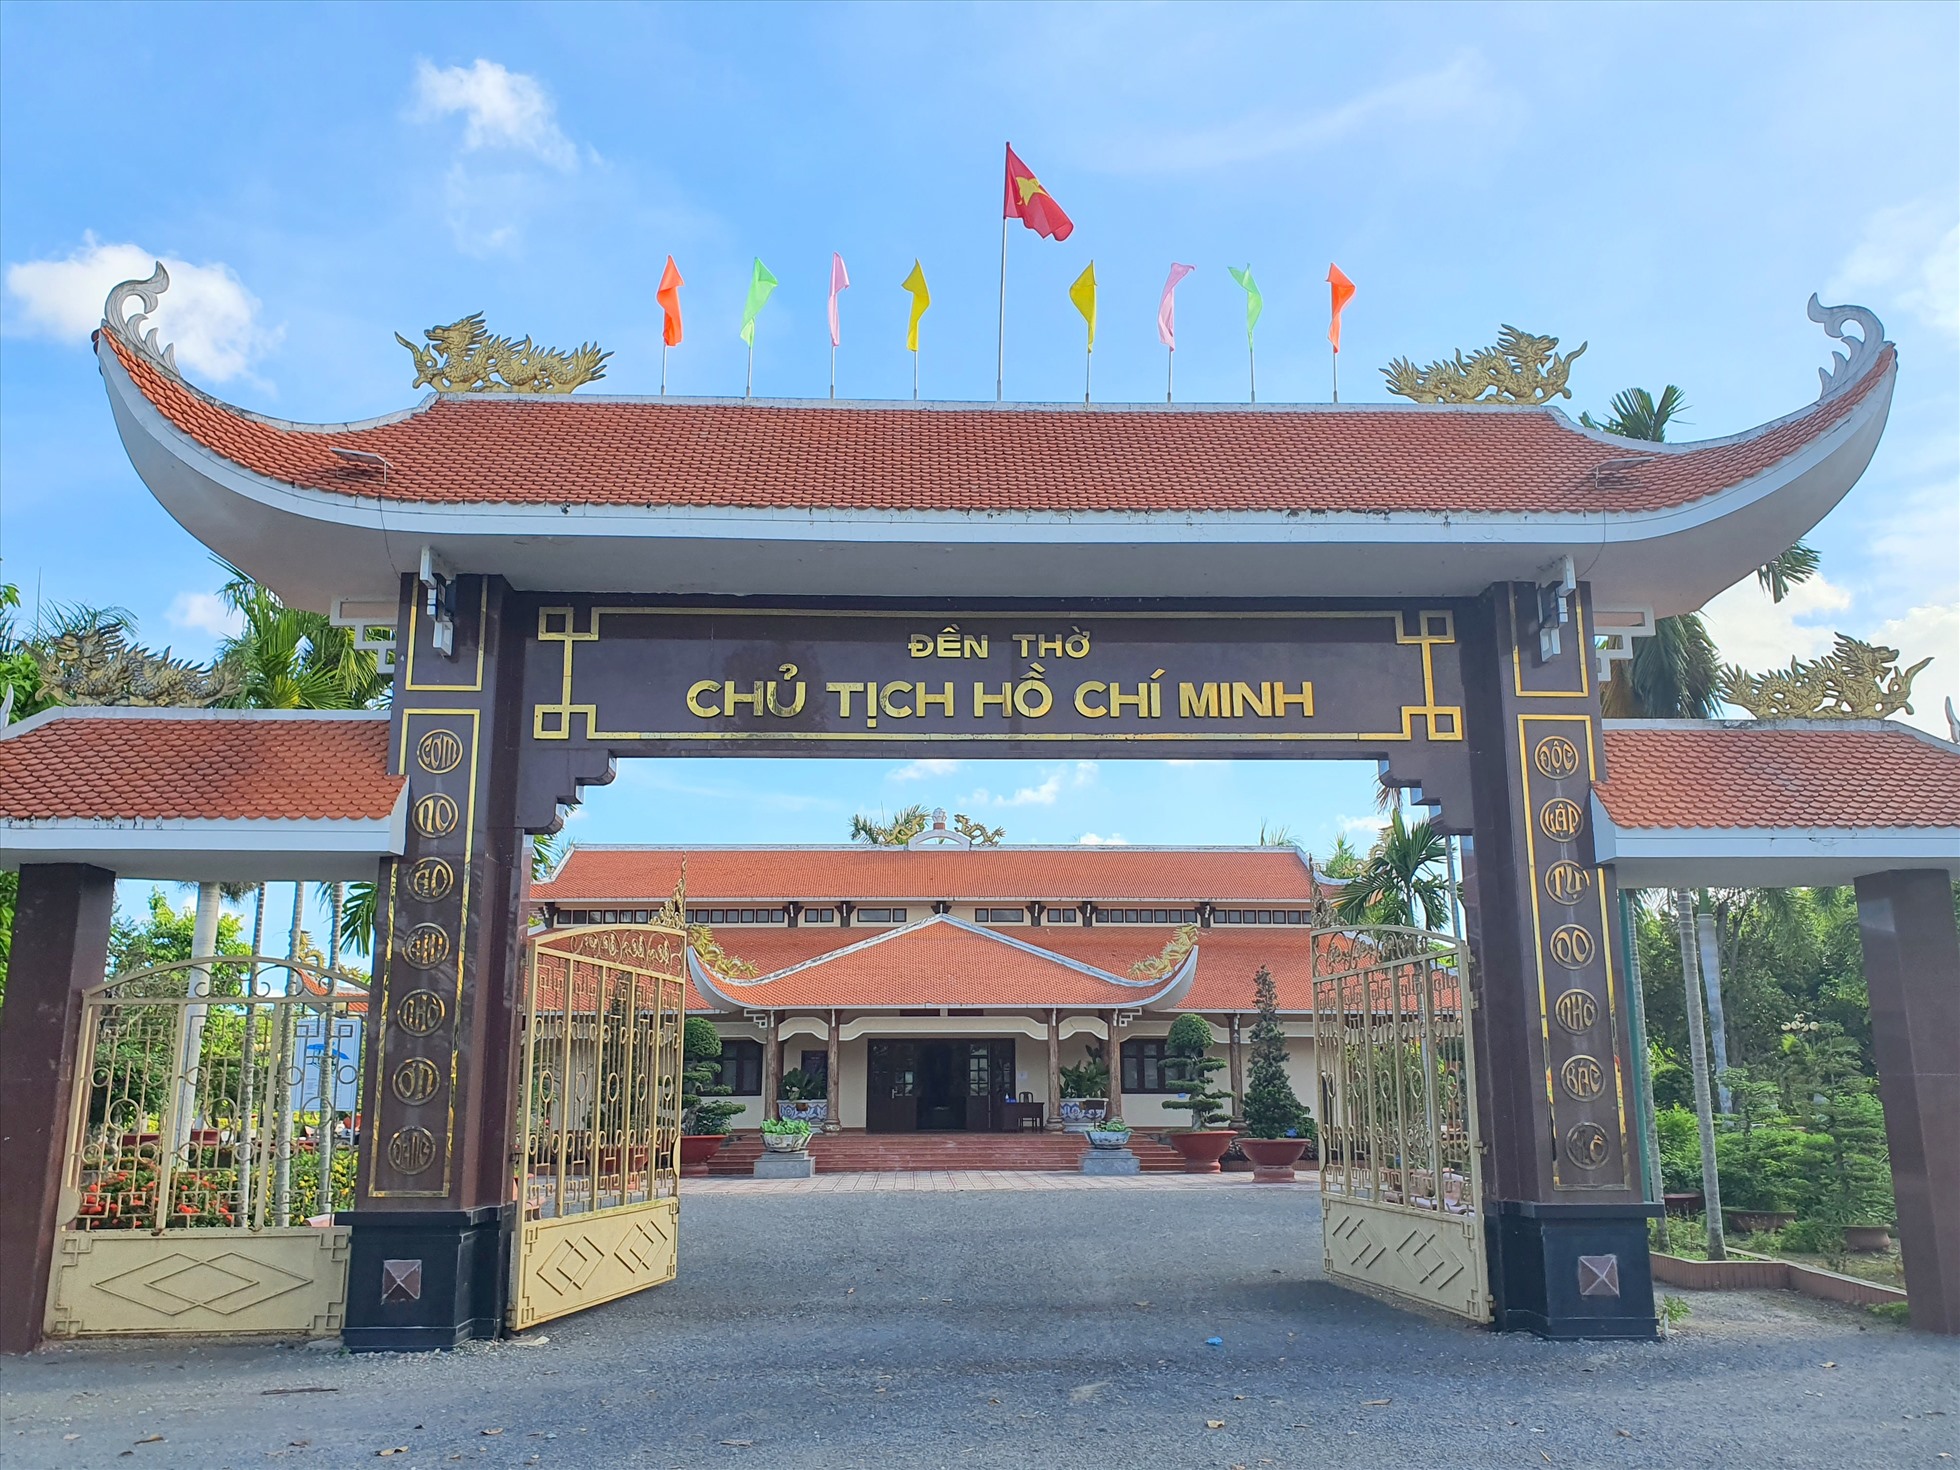 Đền thờ Bác Hồ tại xã Châu Thớ huyện Vĩnh Lợi, tỉnh Bạc Liêu được nhân dân xây xựng vào năm 1969, đến năm 1972 thì hoàn thành, qua nhiều lần trung tu hiện đã khang trang như ngày nay. Đền thơ được công nhận Di tích Quốc gia vào năn 1998.